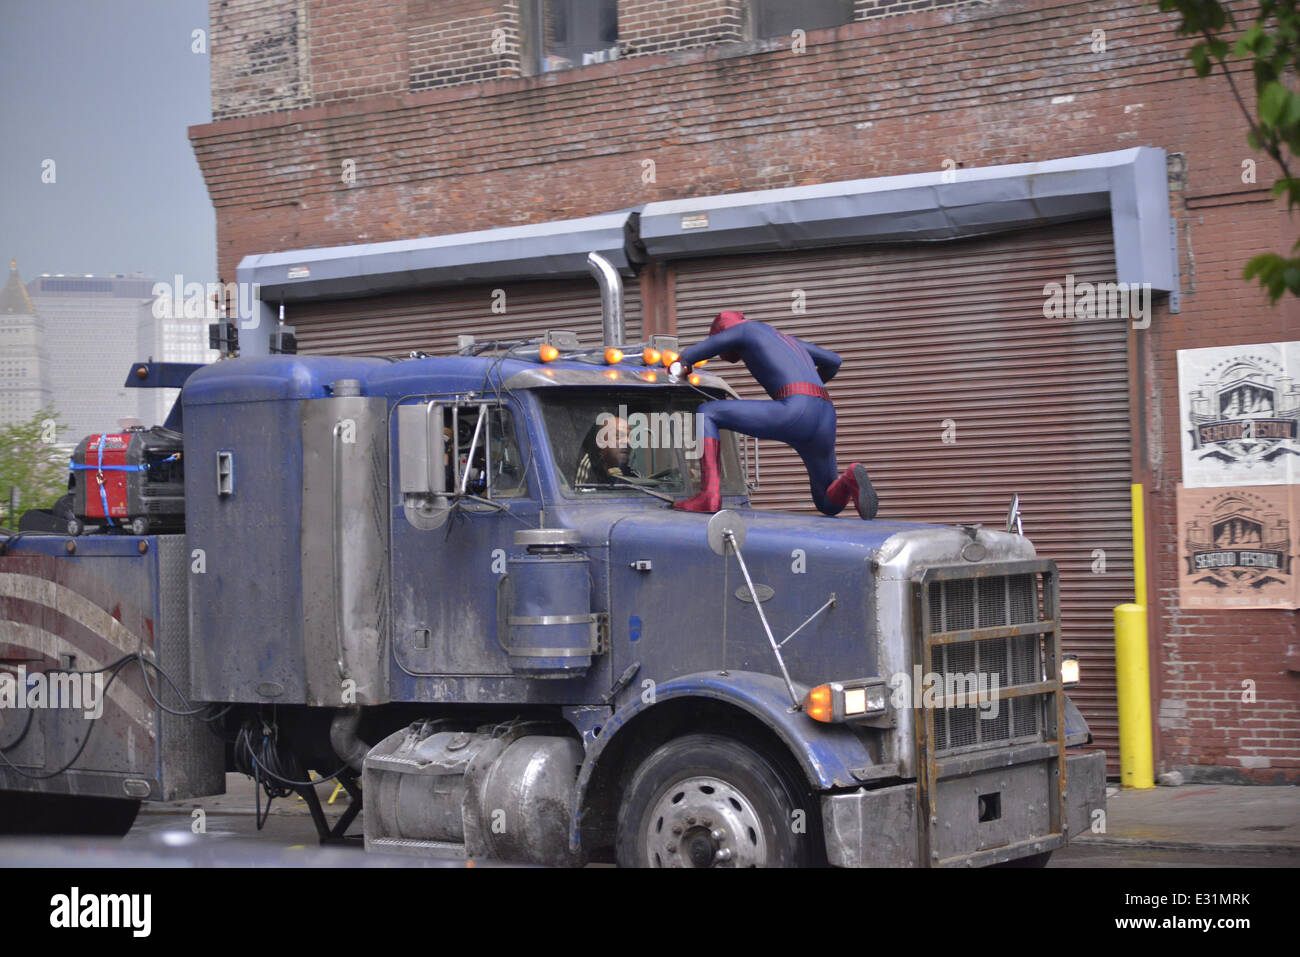 Andrew Garfield und Paul Giamatti Dreharbeiten eine Action-Szene am Set von "The Amazing Spider-Man 2" in Brooklyn. Garfield ist mit seinem Spider-Man-Kostüm während der Dreharbeiten mit gesichtet: Andrew Garfield wo: New York City, NY, USA bei: 11 Mai 2013ENN.com Stockfoto